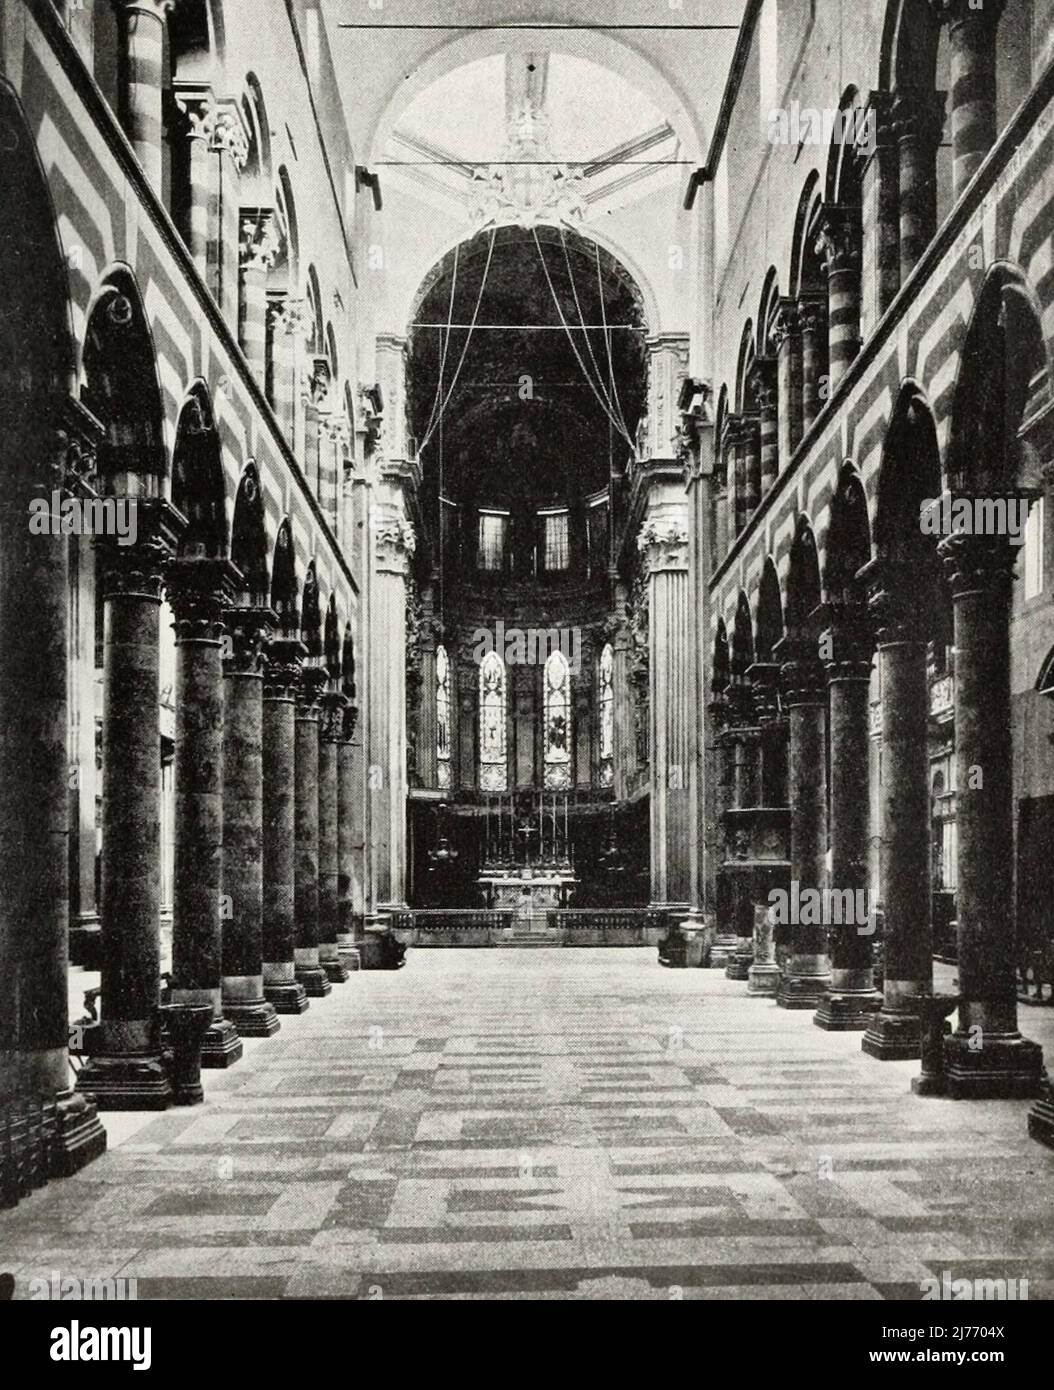 La cathédrale de San Lorenzo, Gênes, Italie, vers 1900 Banque D'Images